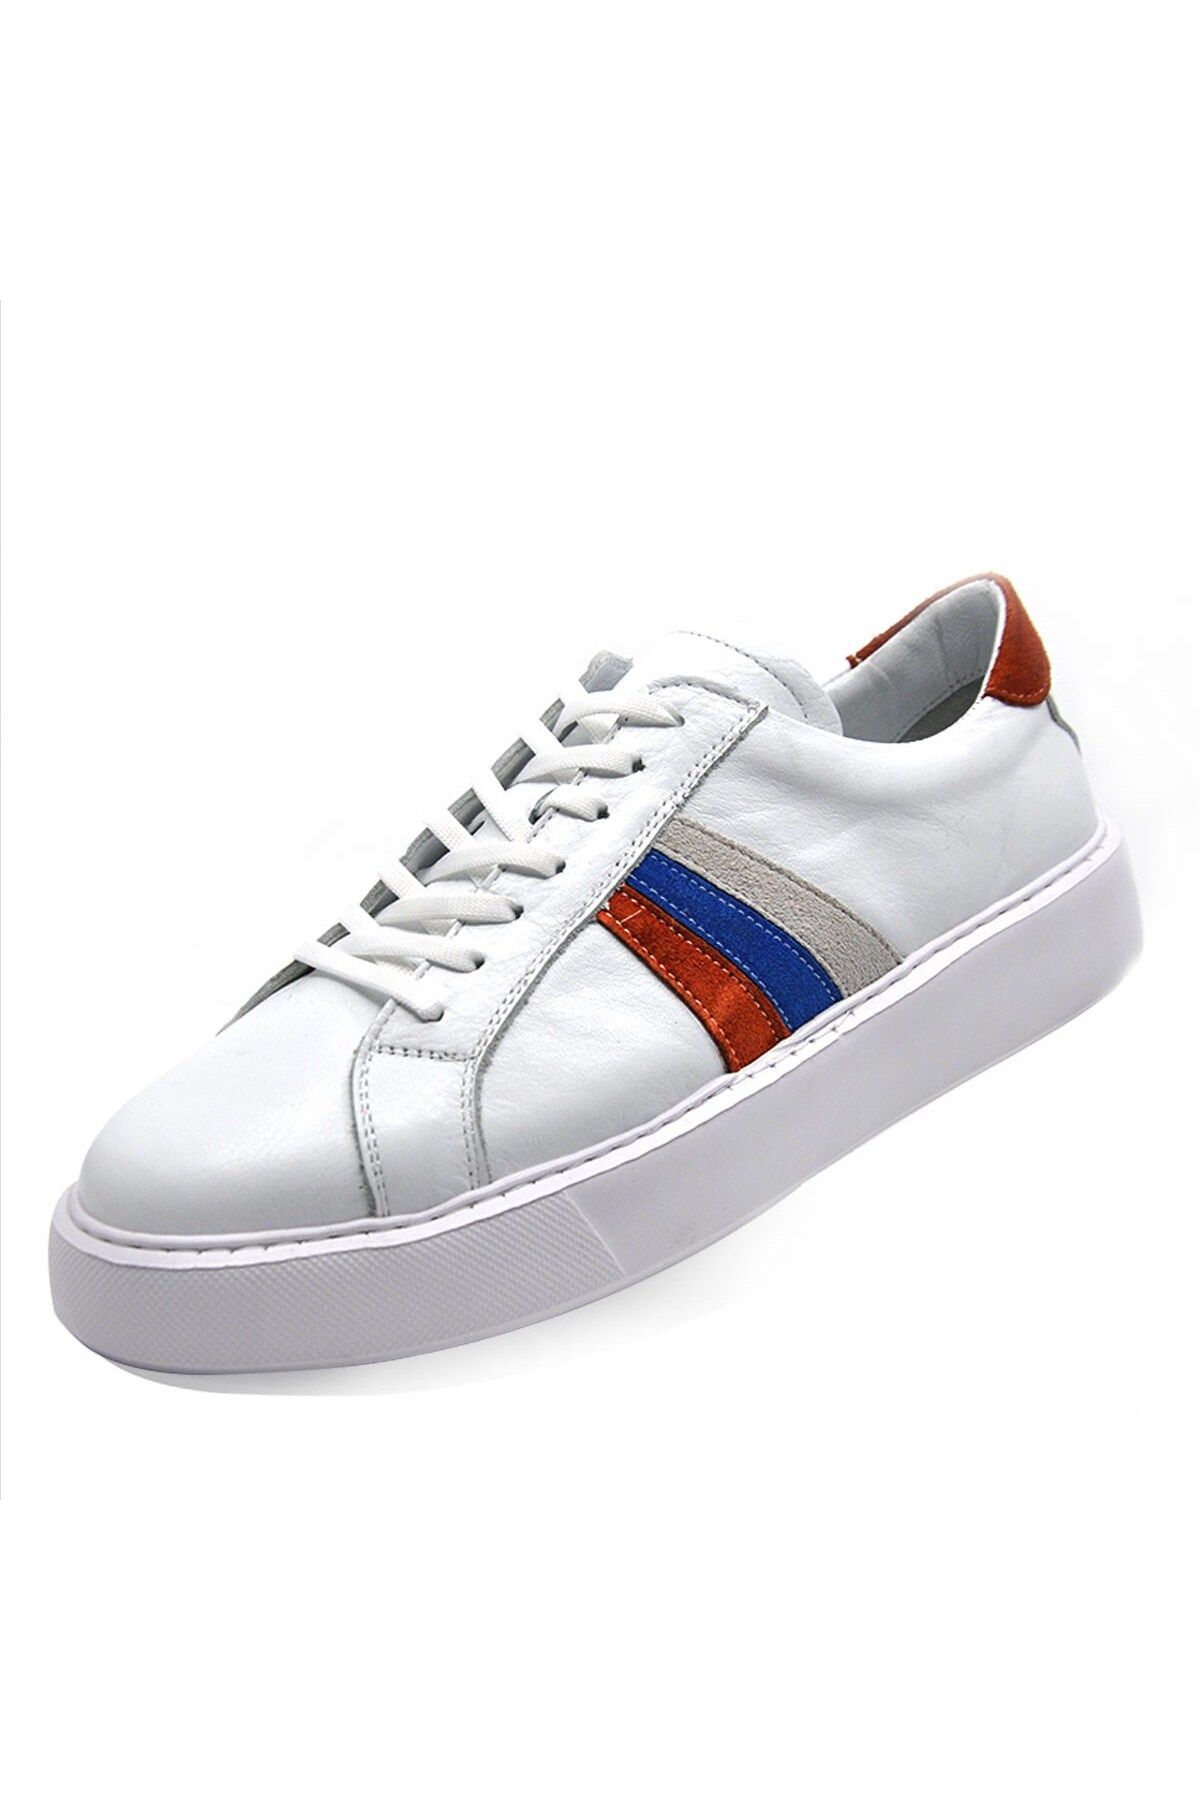 Fosco Hakiki Deri Beyaz Turuncu Sneaker Erkek Ayakkabı 9825